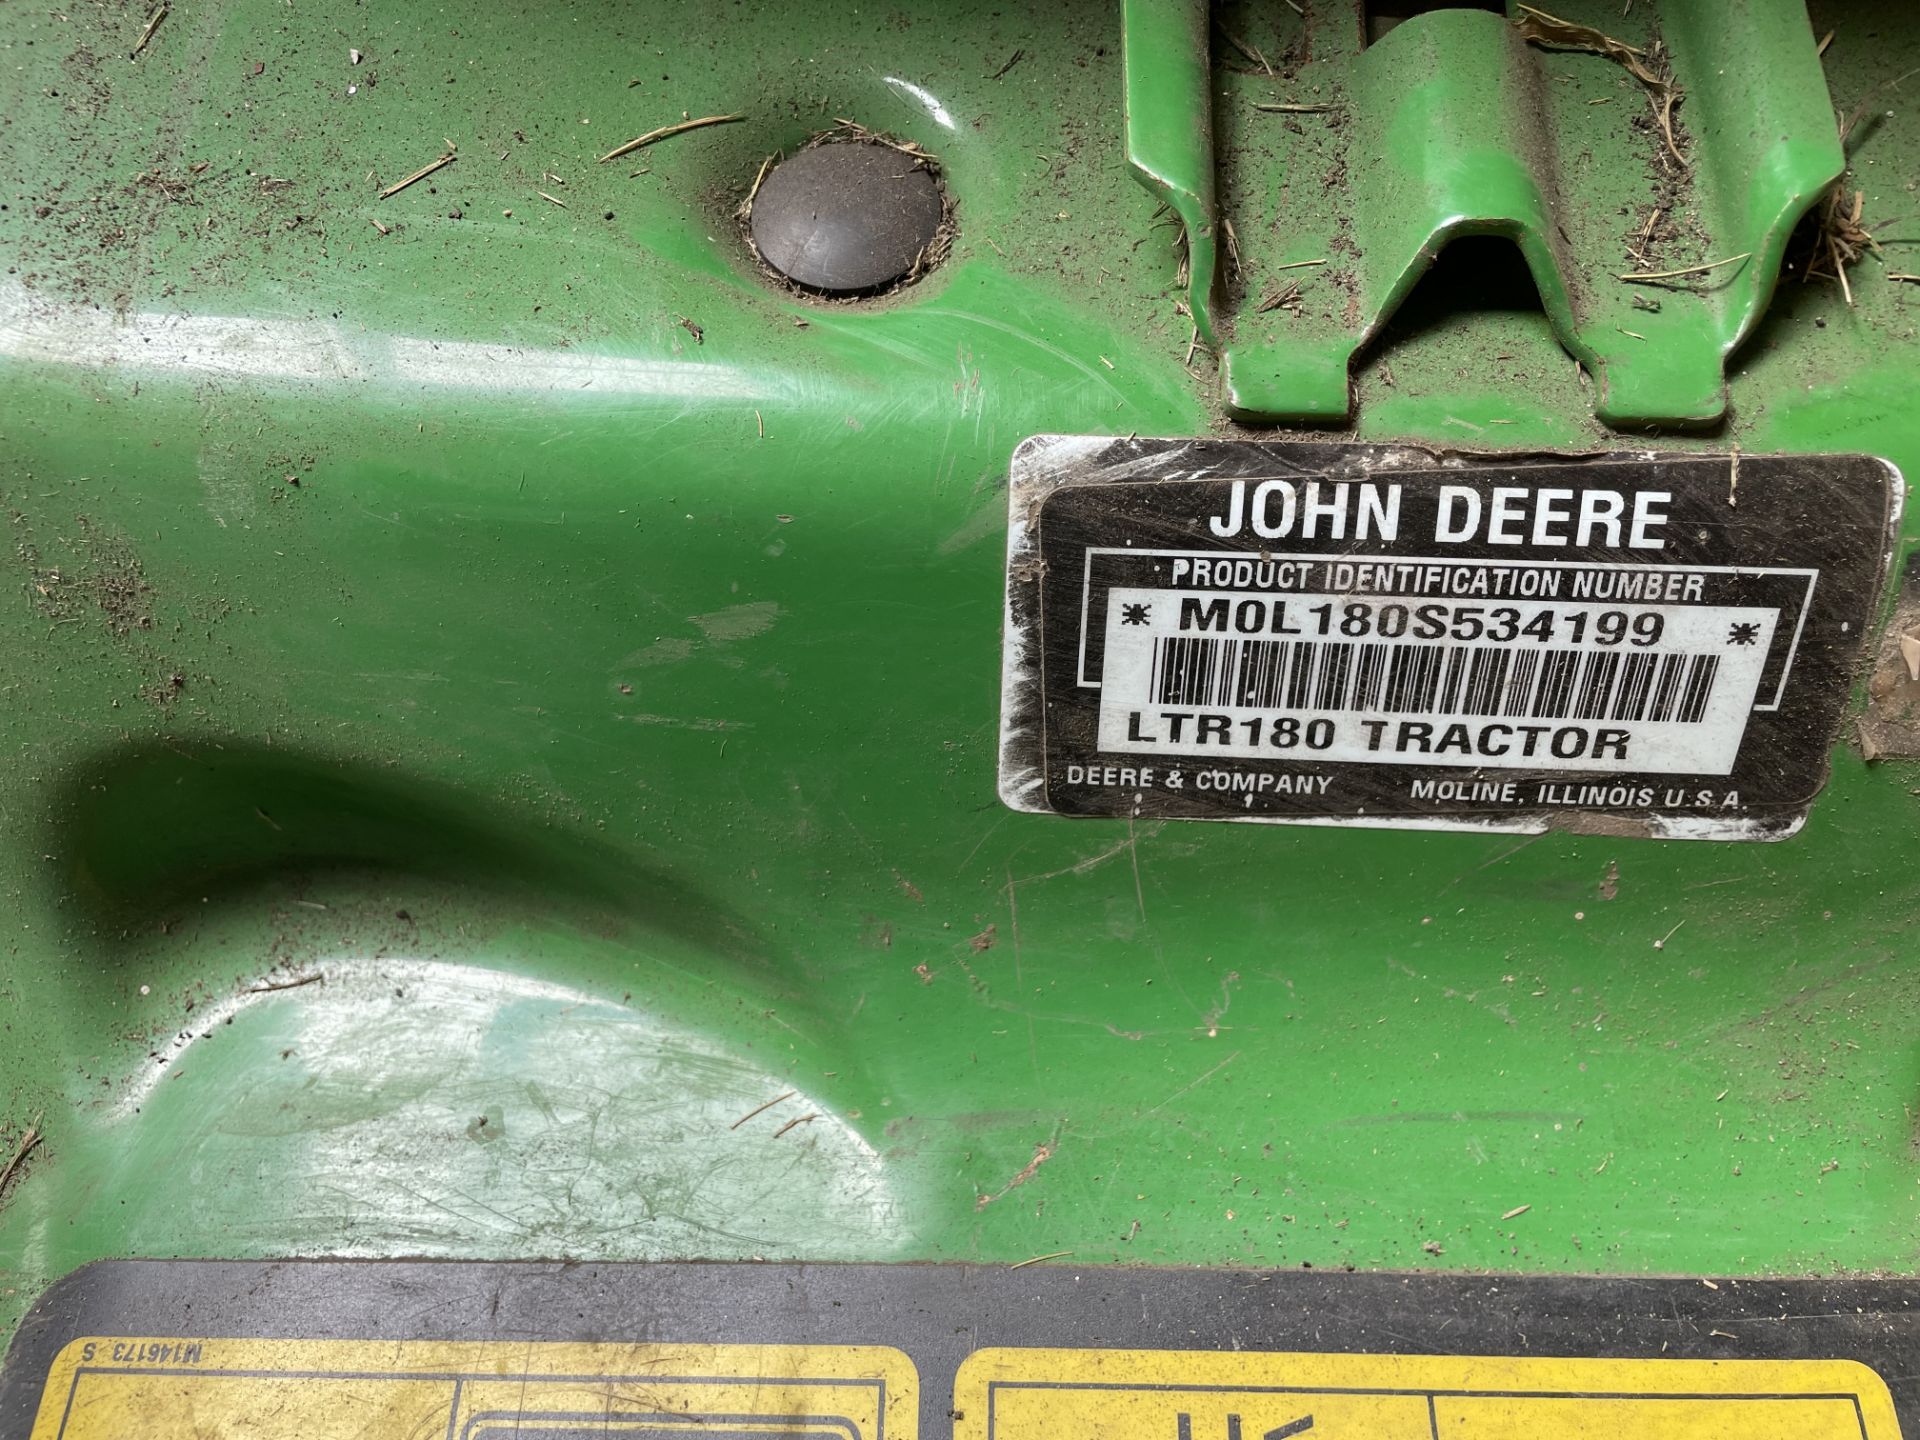 JOHN DEERE LTR180 AUTOMATIC GRASS CUTTER - Image 3 of 3